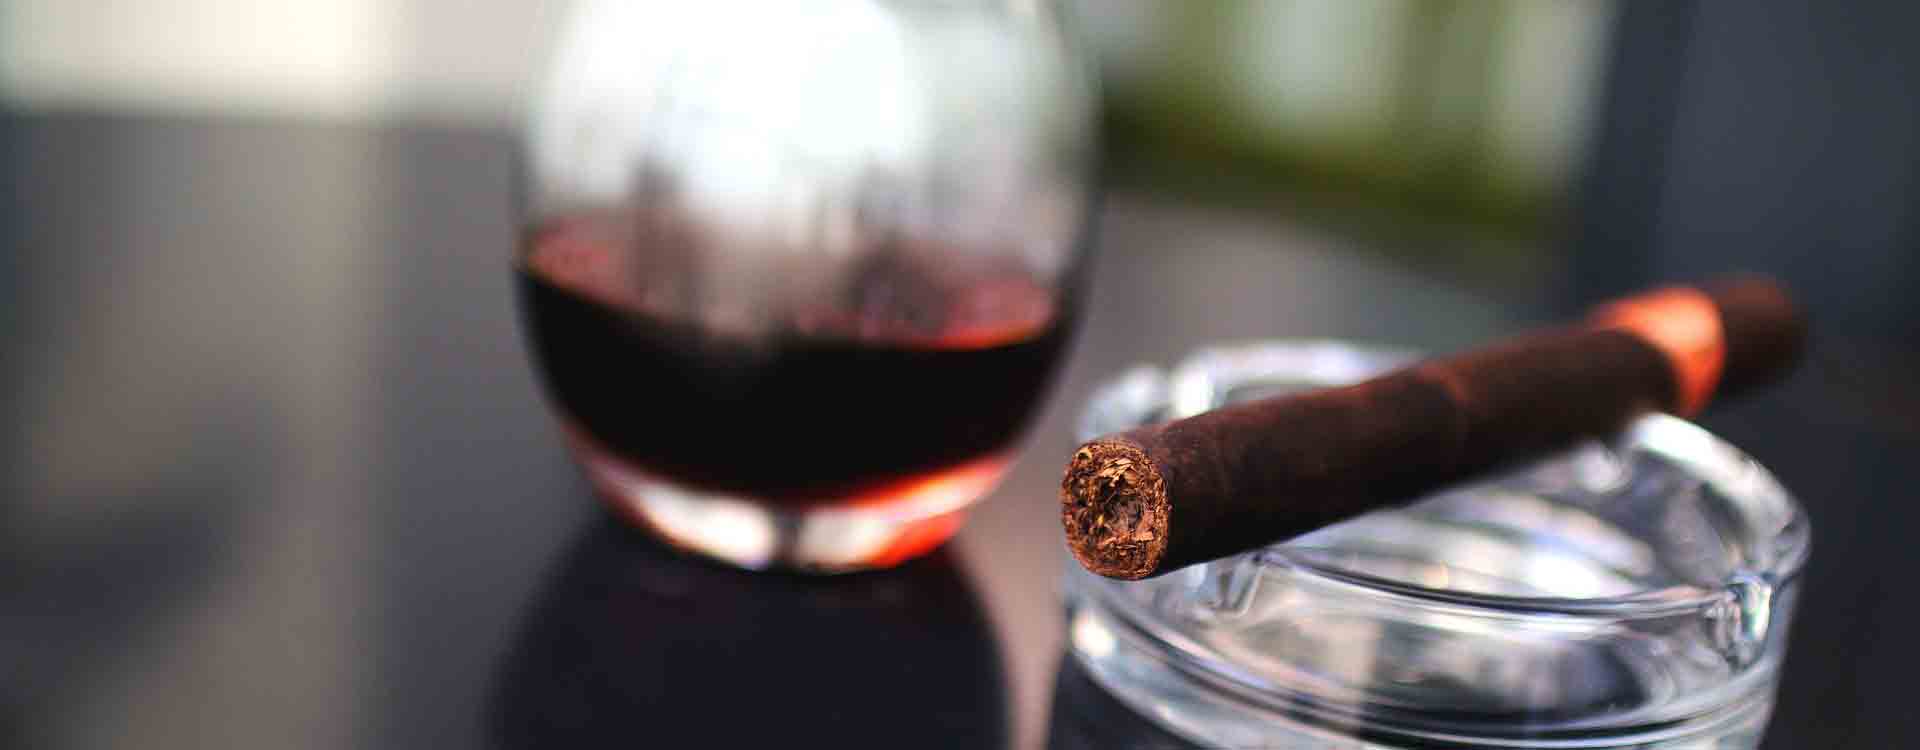 Cigara v cigarovom popolníku a pohár červeného vína